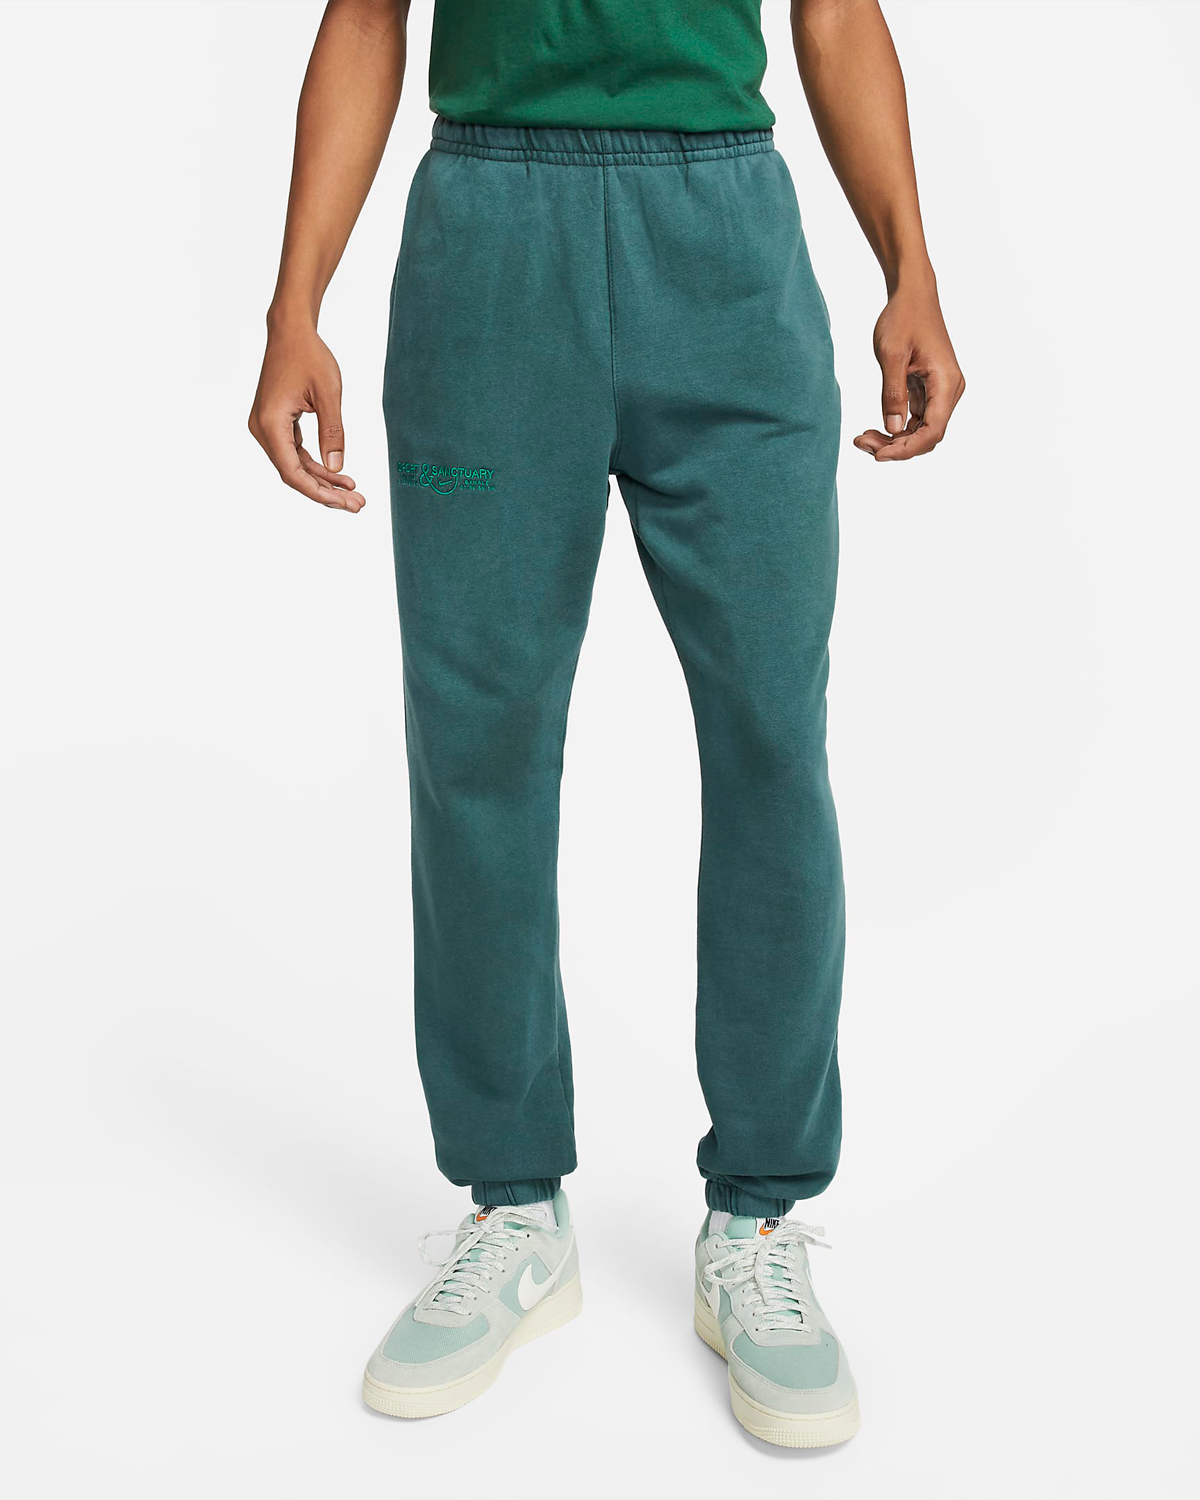 Nike-Club-Fleece-Pants-Pro-Green-Malachite-1